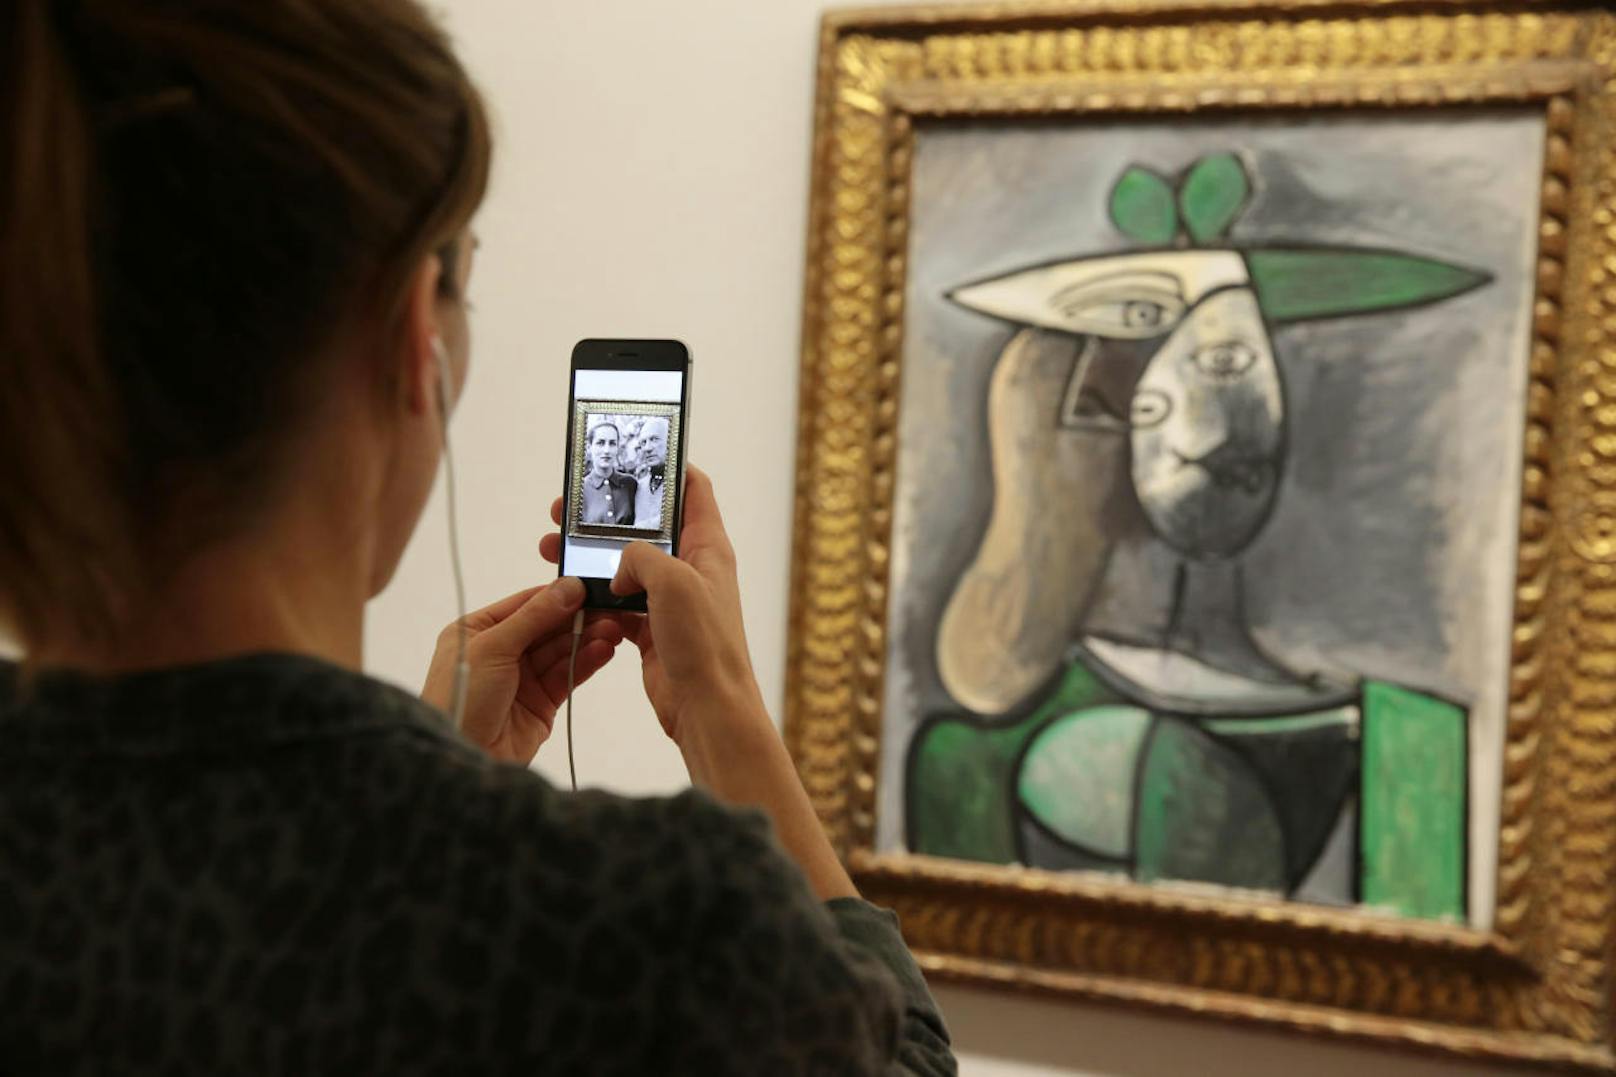 In der Albertina können erstmals in einem europäischen Museum ausgewählte Exponate mithilfe der kostenlosen App Artivive in einer neuen Dimension erlebt werden. Halten Besucher ihr Smartphone oder Tablet vor die Werke, werden die Bilder mittels Animationen oder Videos zum Leben erweckt.
Bild: "Frau mit grünem Hut", Pablo Picasso